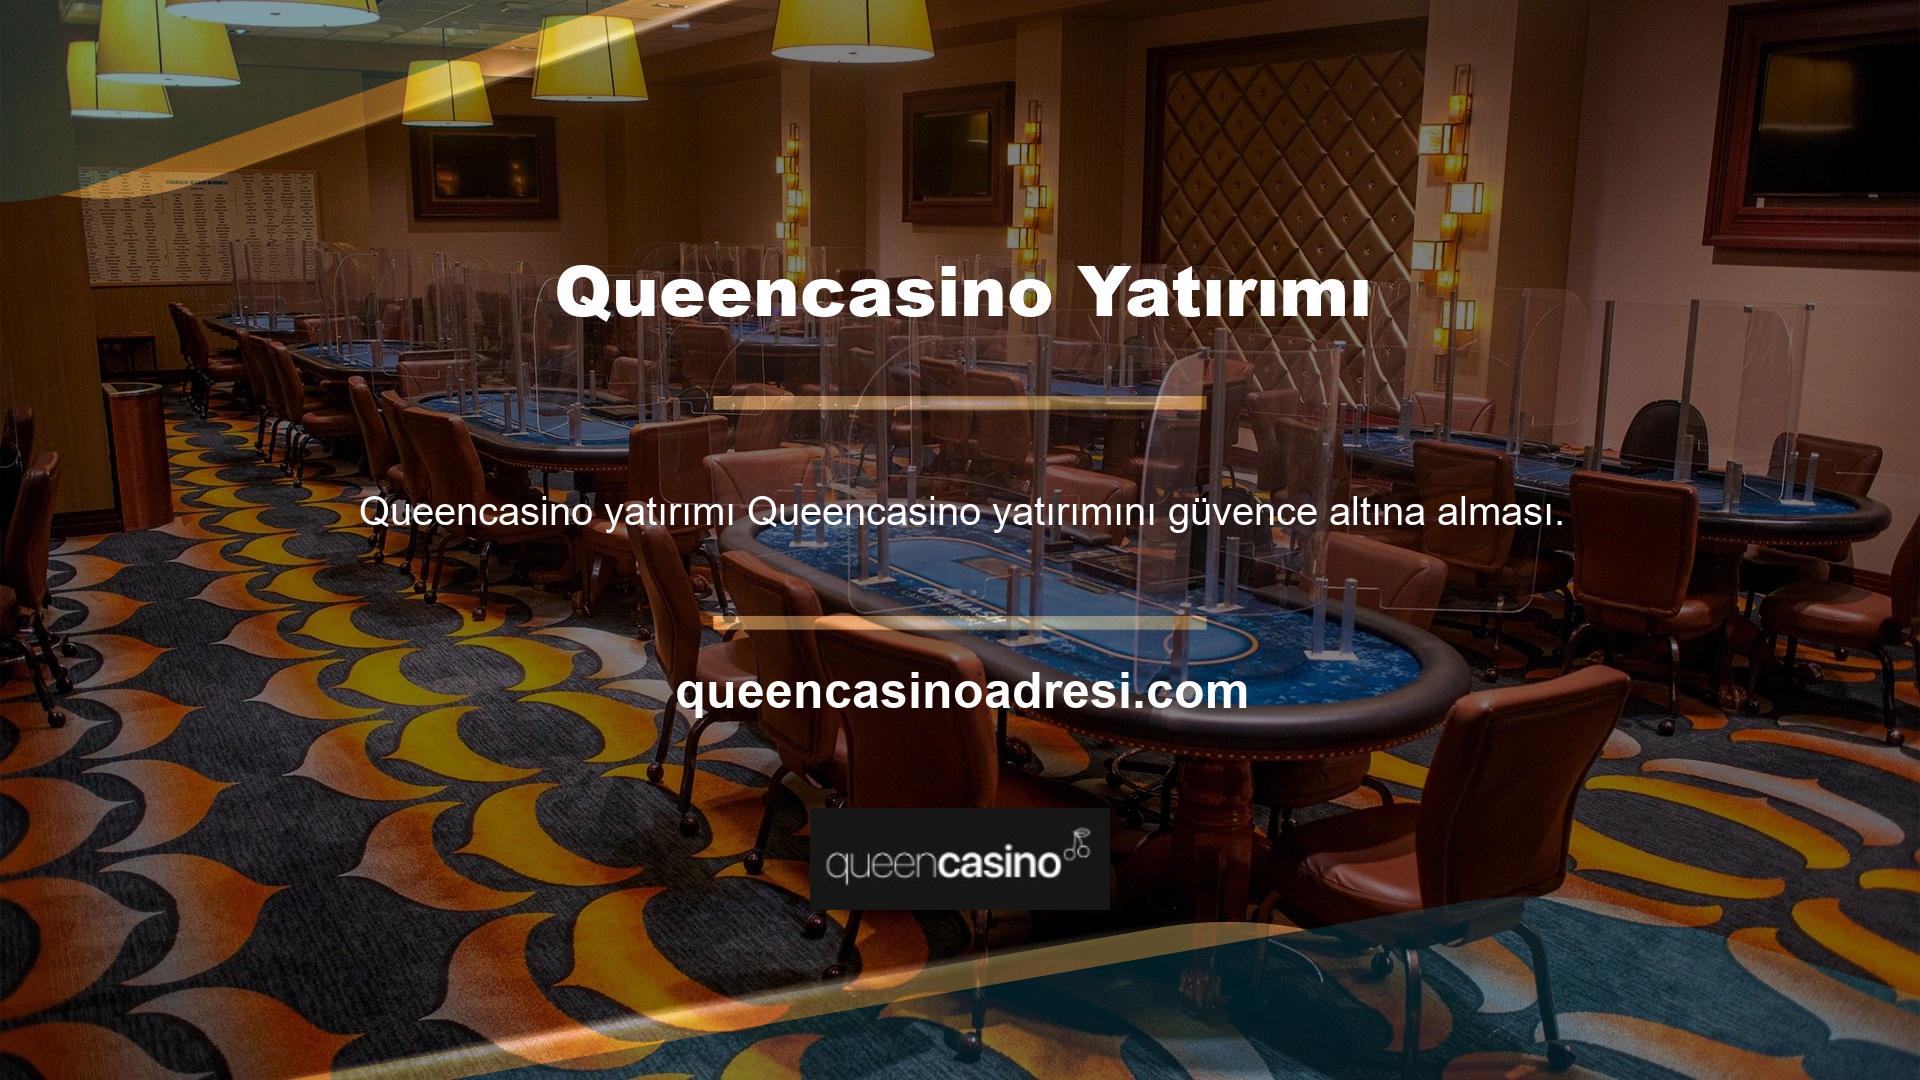 Artan oyuncu sayısıyla Queencasino, dünyanın en popüler bahis sitelerinden biri olarak kabul ediliyor